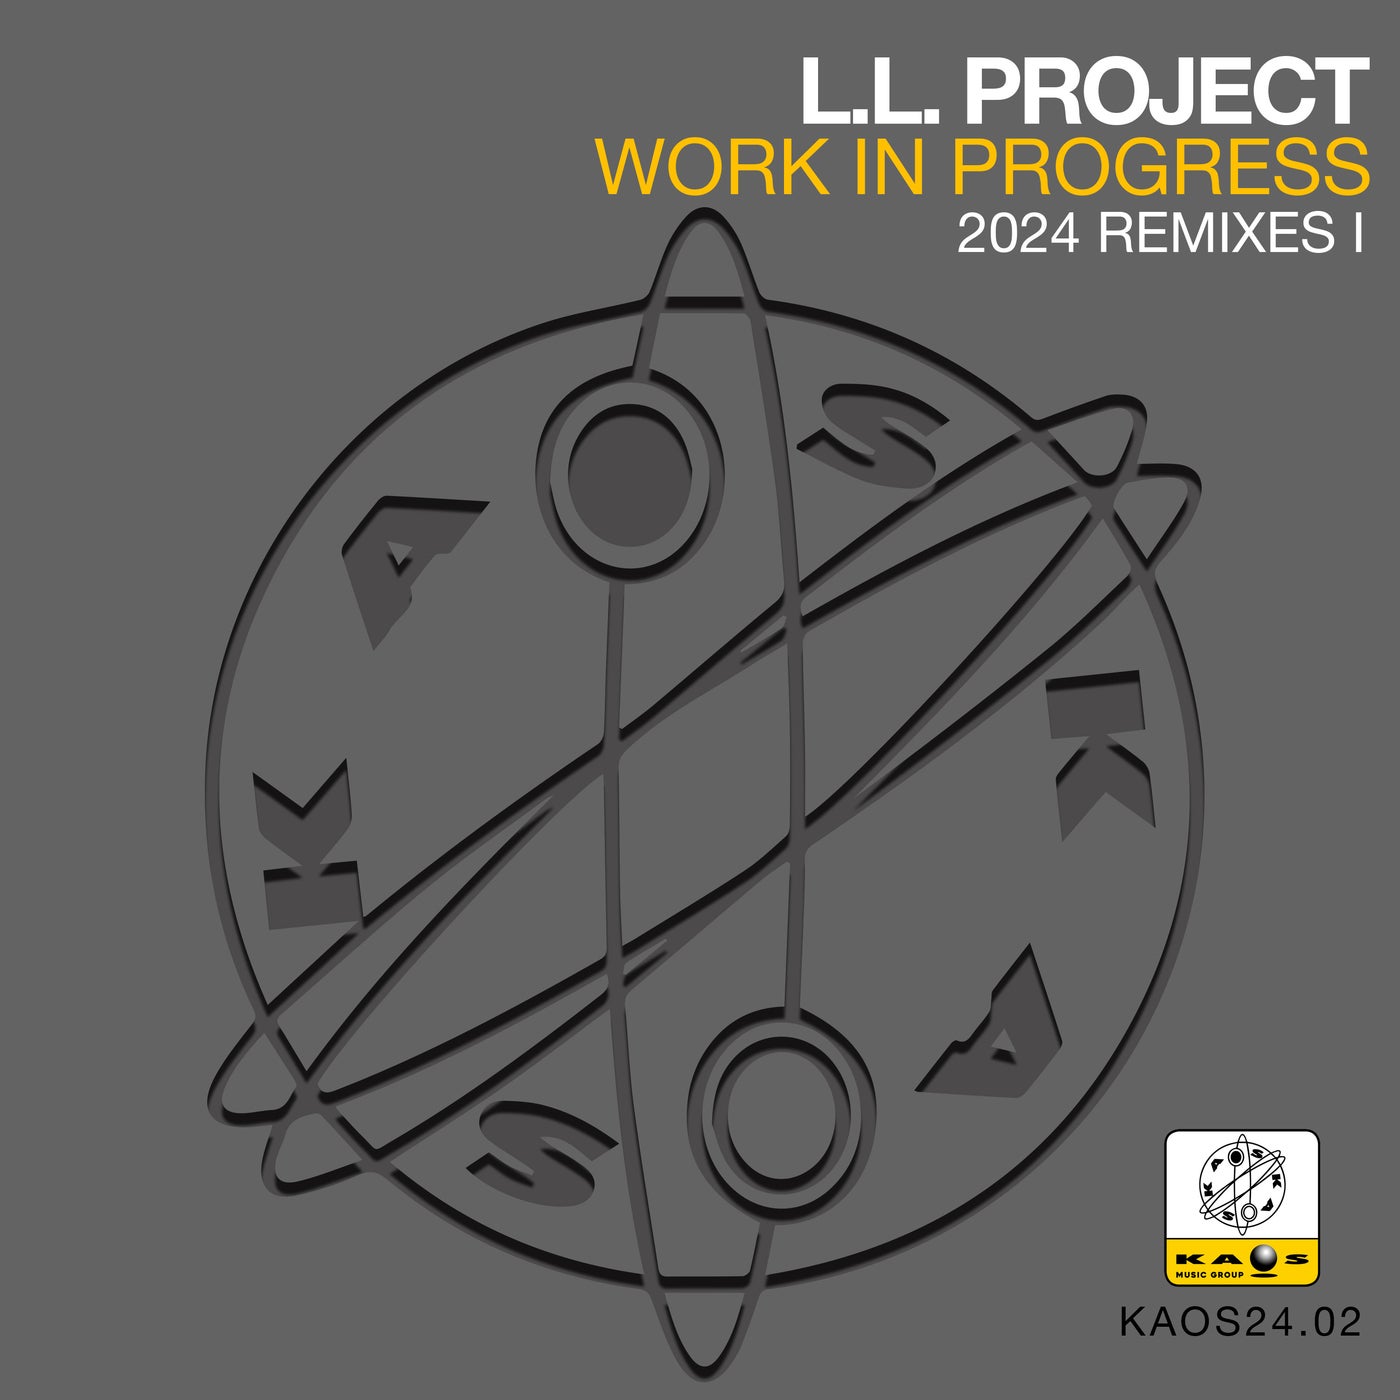 Work In Progress (2024 Remixes I)